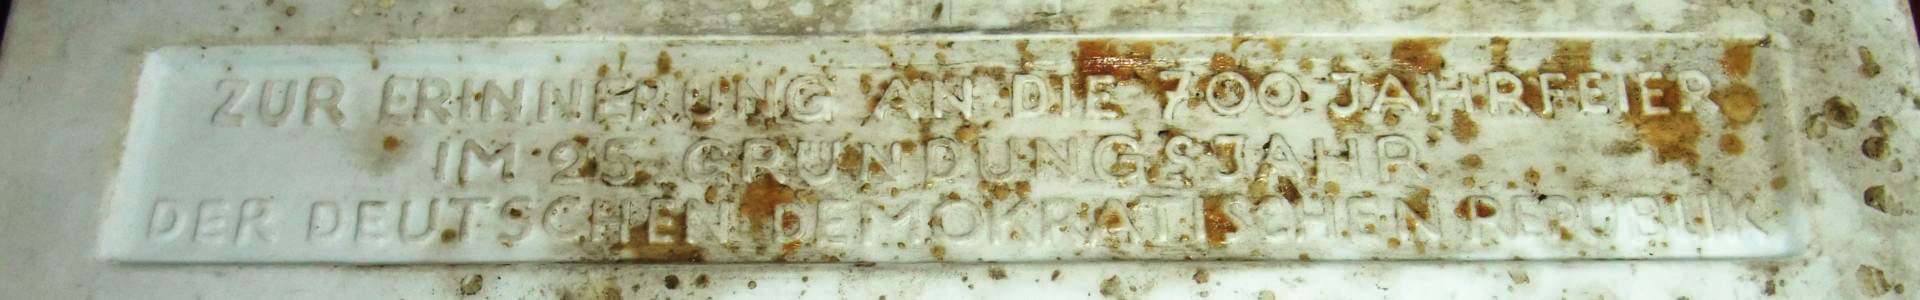 Plakette - Rückseite, Inschrift